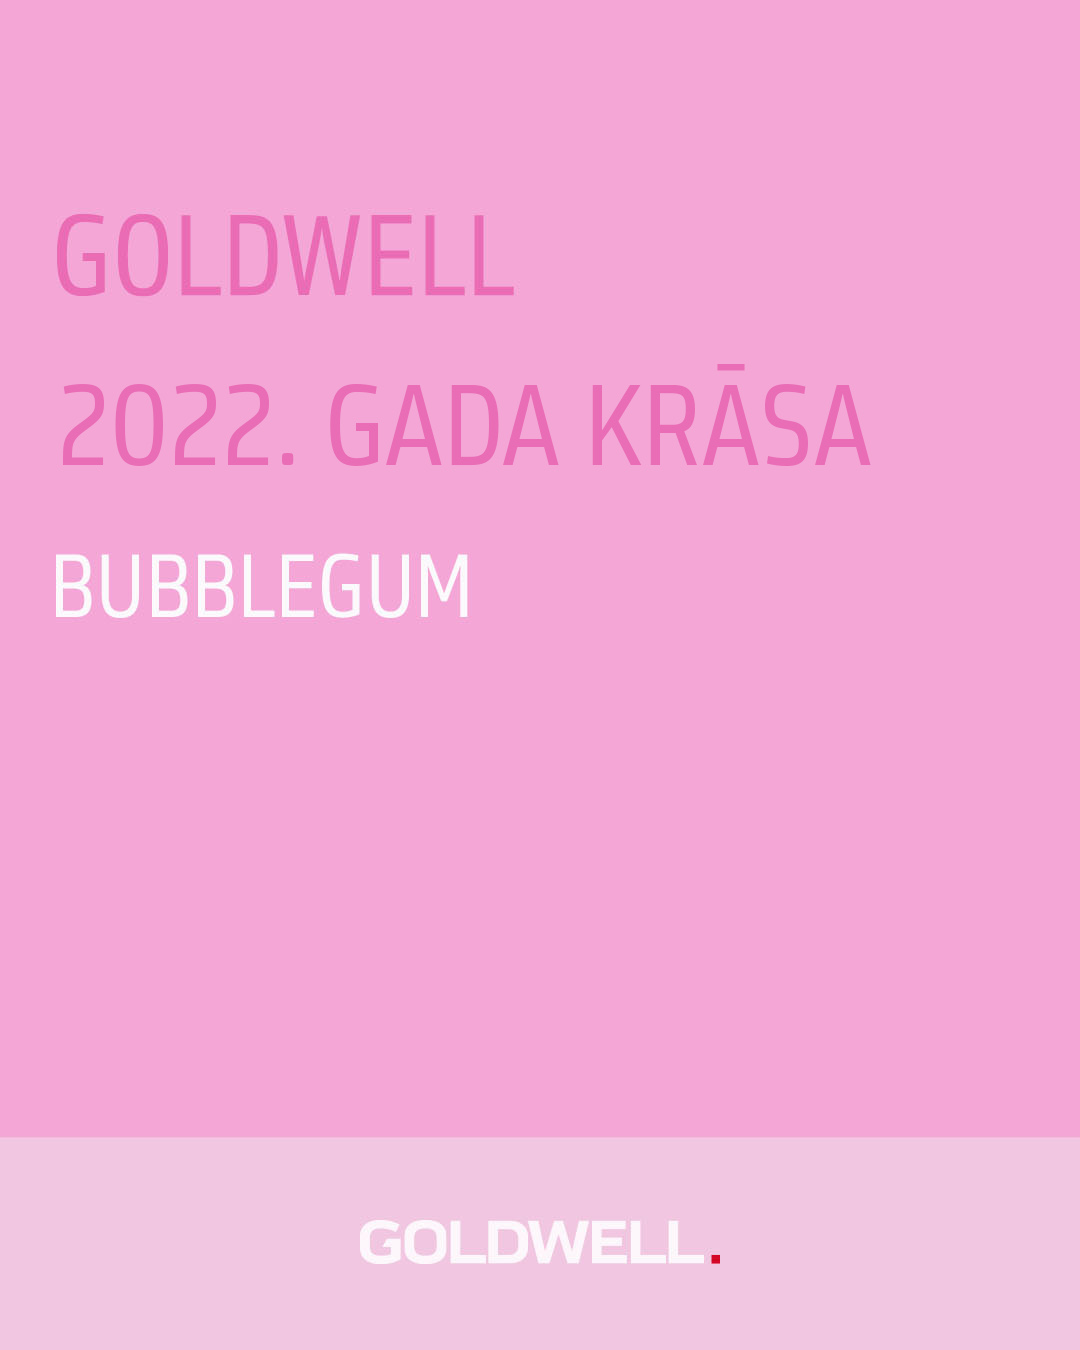 Goldwell izsludina savu 2022.gada krāsu